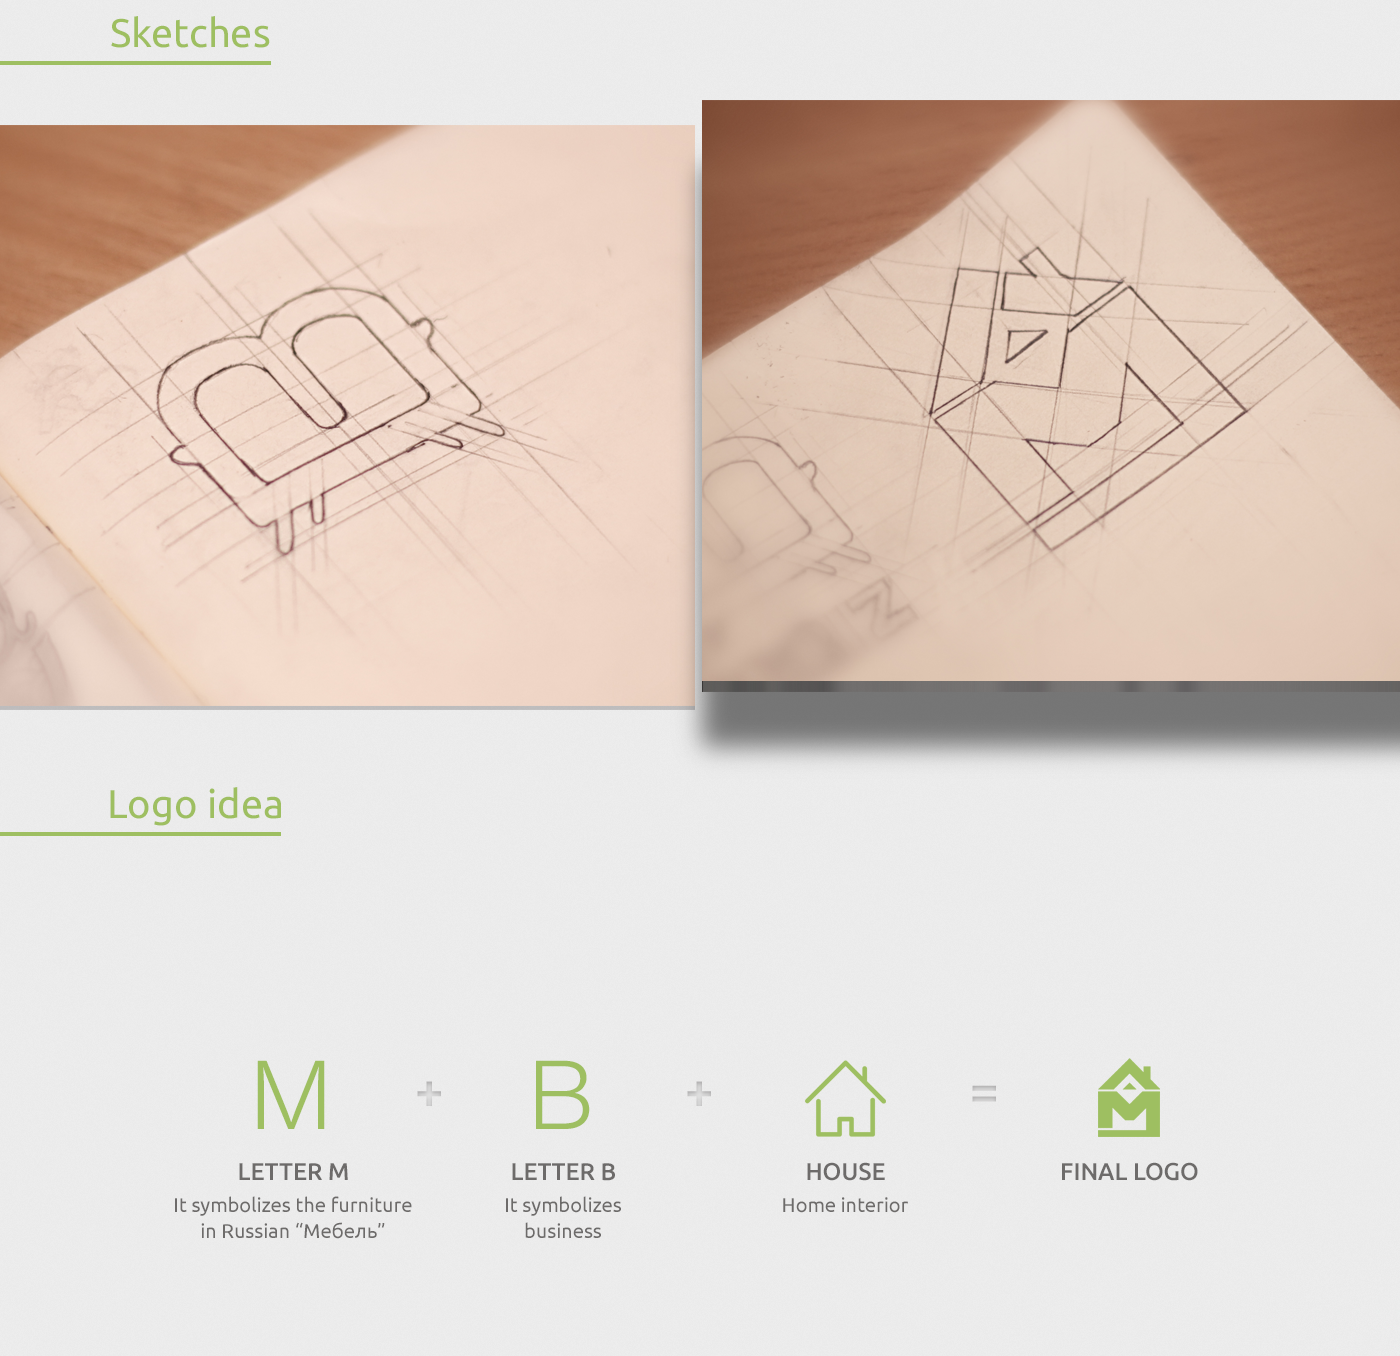 sketch design logo Logotype brand mebiz furniture